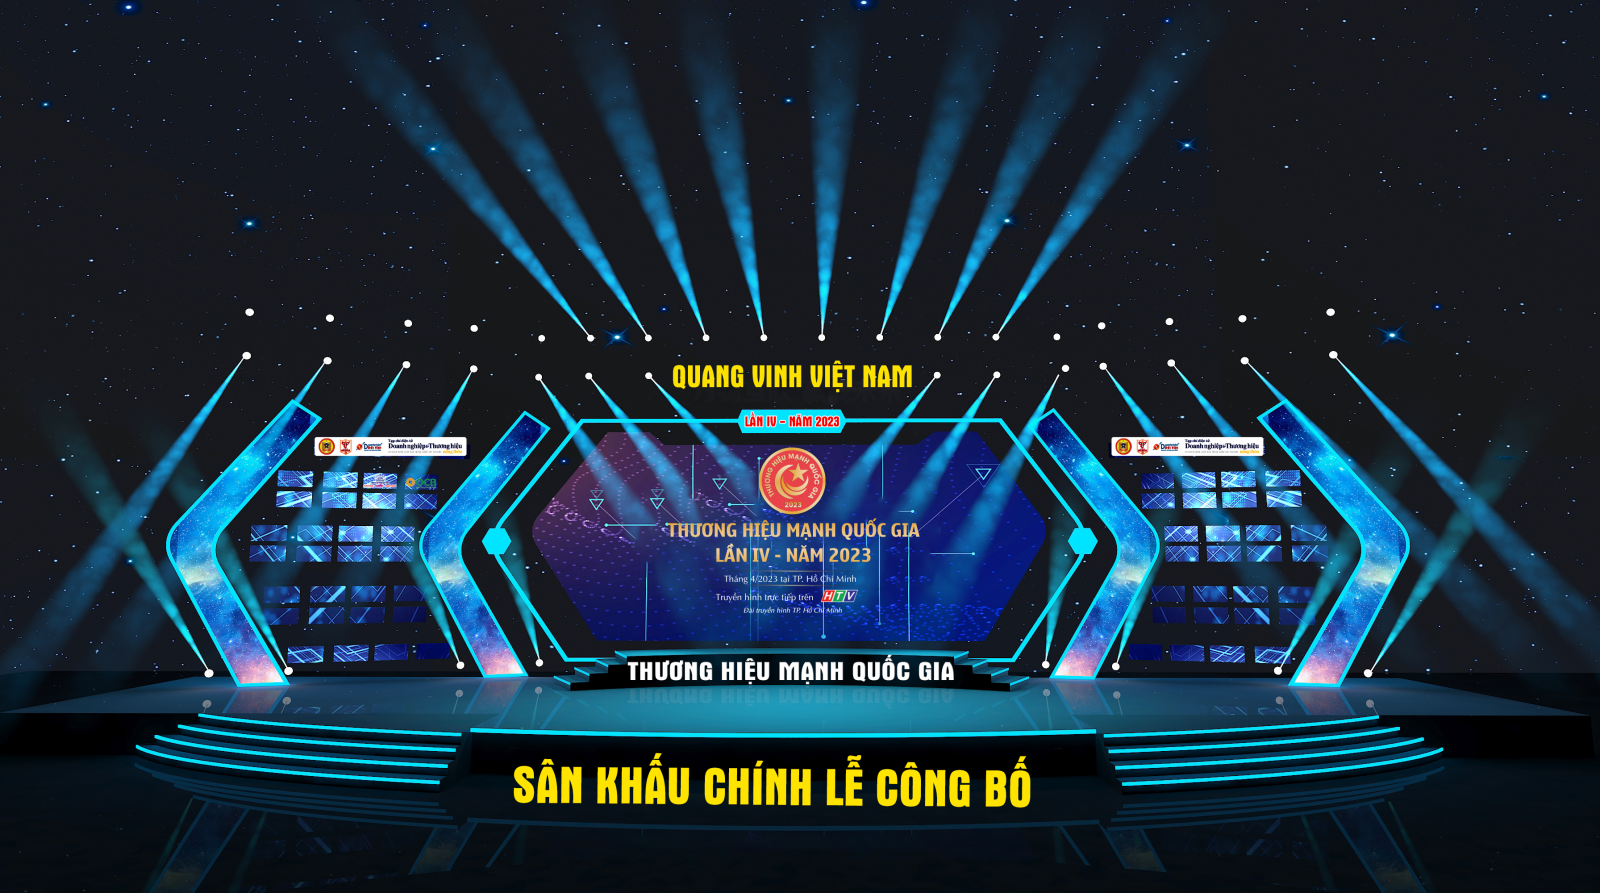 Lễ Công bố "Thương Hiệu Mạnh Quốc Gia 2023" - Tháng 4/2023 tại TP Hồ Chí Minh, Truyền hình trực tiếp HTV1